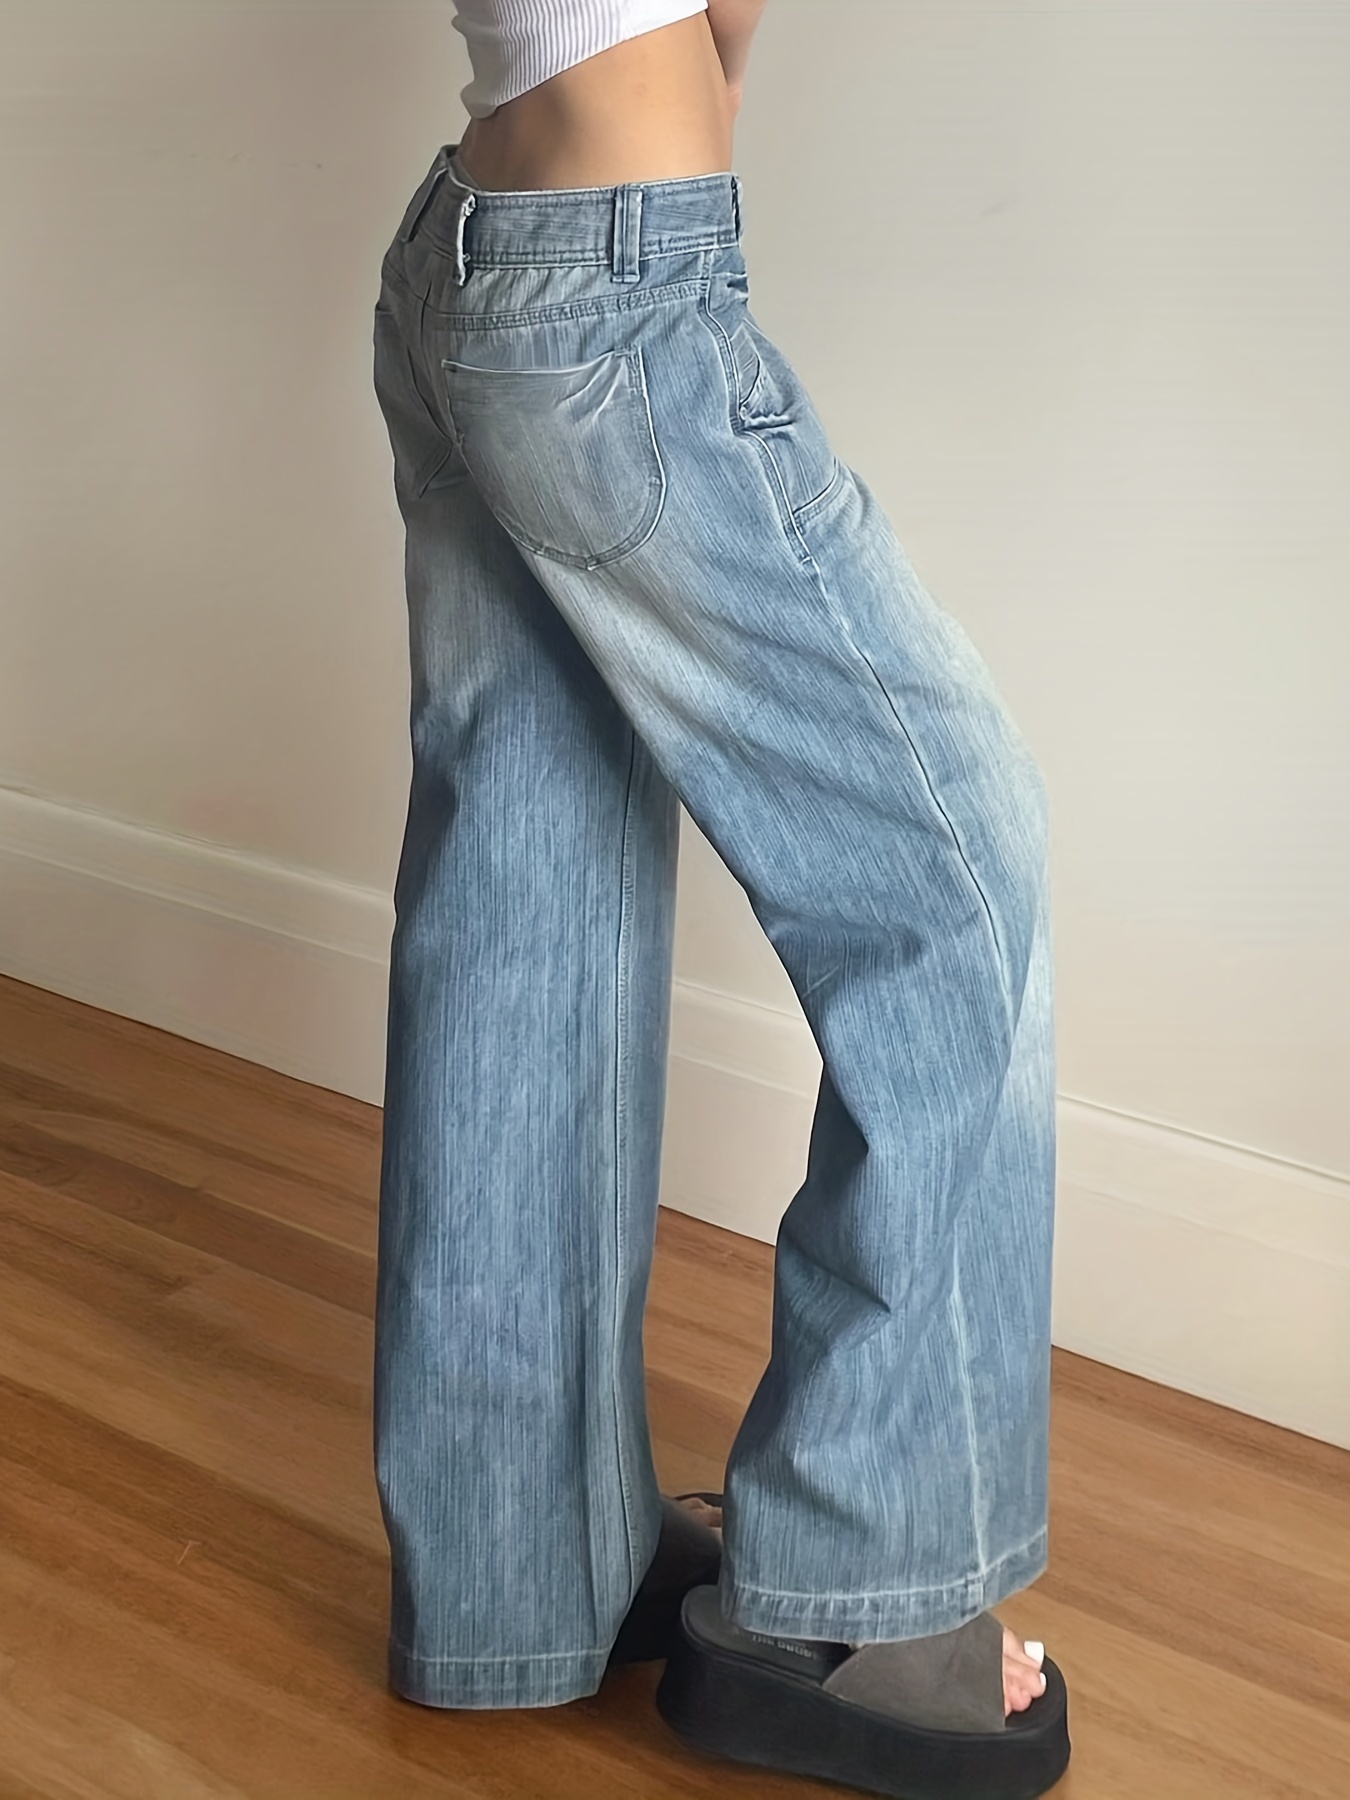 Boyfriend Style Streetwear Baggy Jeans Women Denim Trousers High Waist Y2k  Vintage Washed Distressed Wide Leg